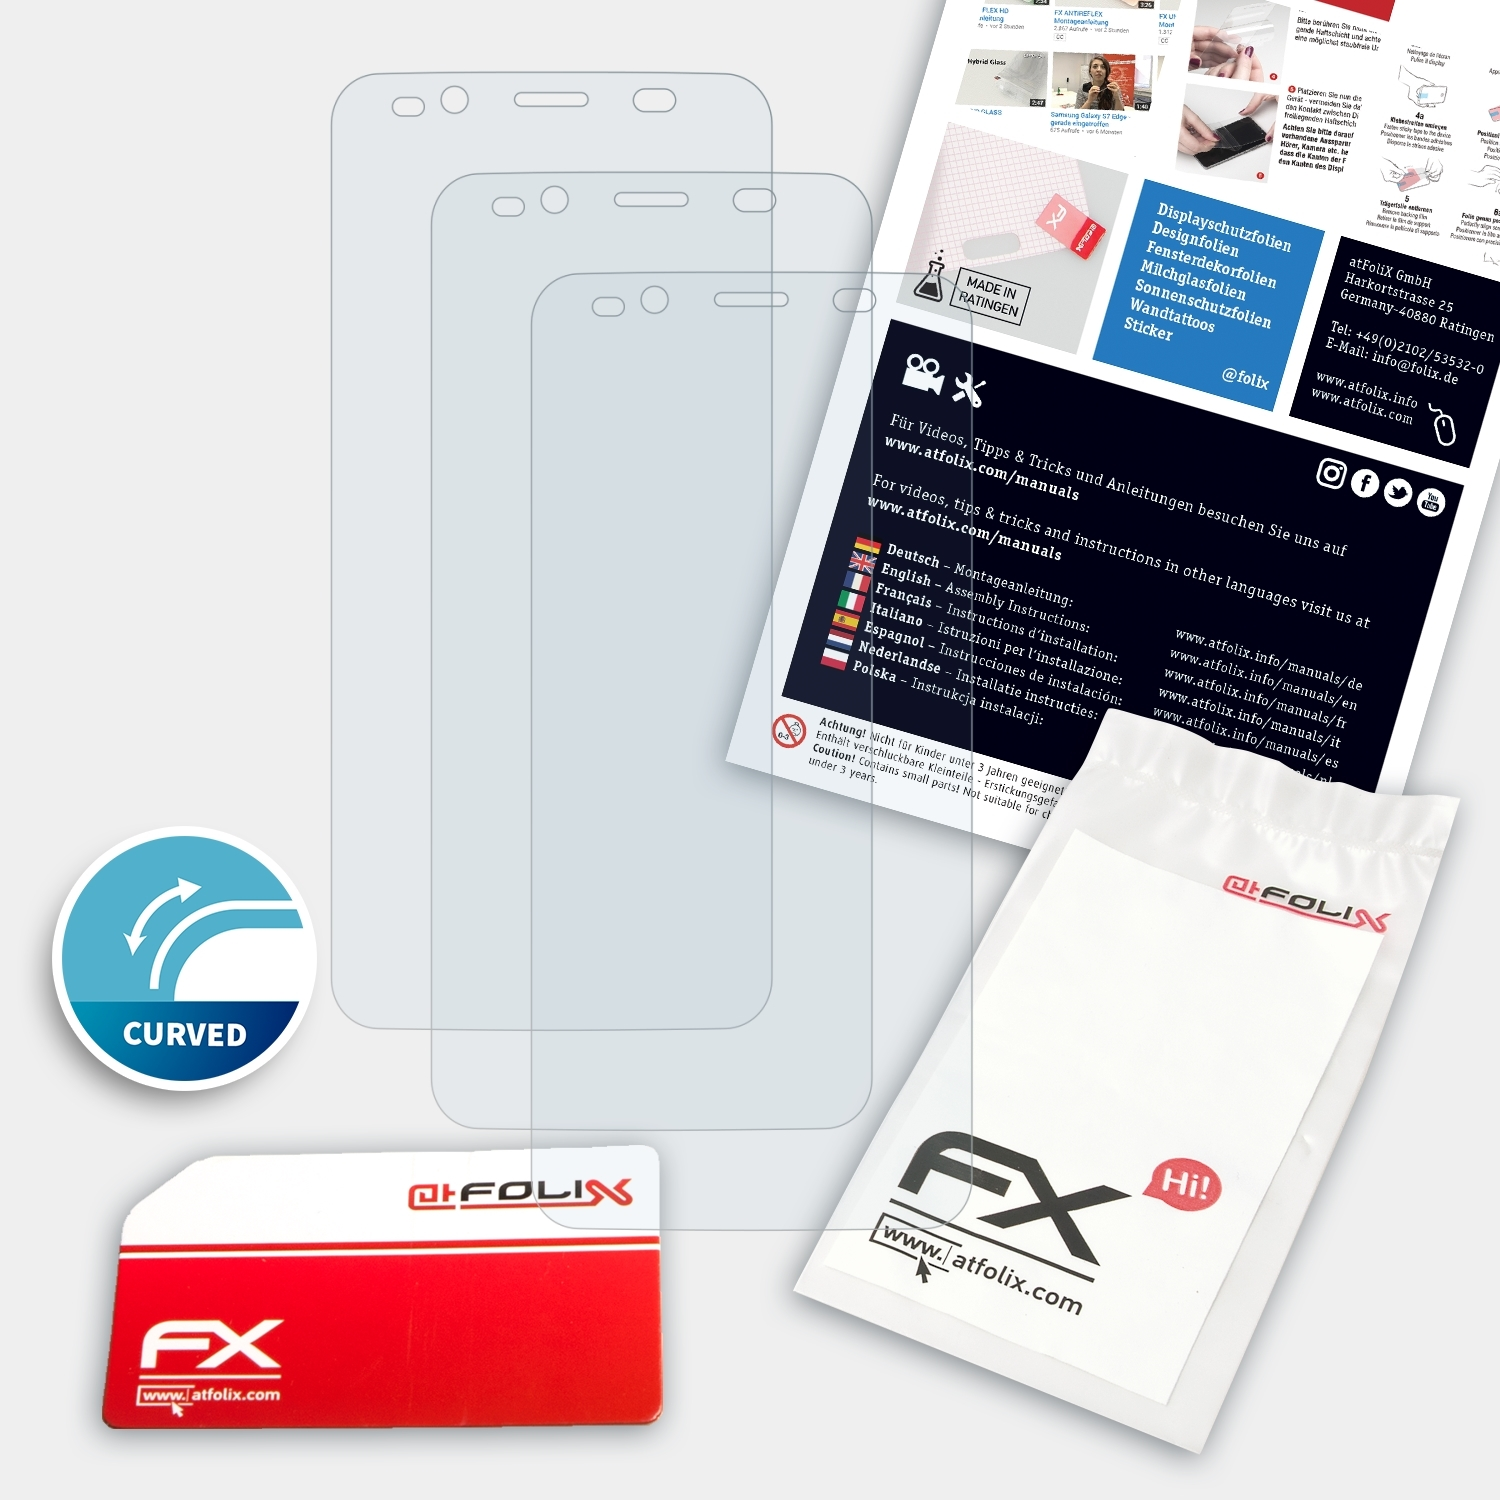 FX-ActiFleX Mobile G3) Displayschutz(für ATFOLIX 3x Nuu